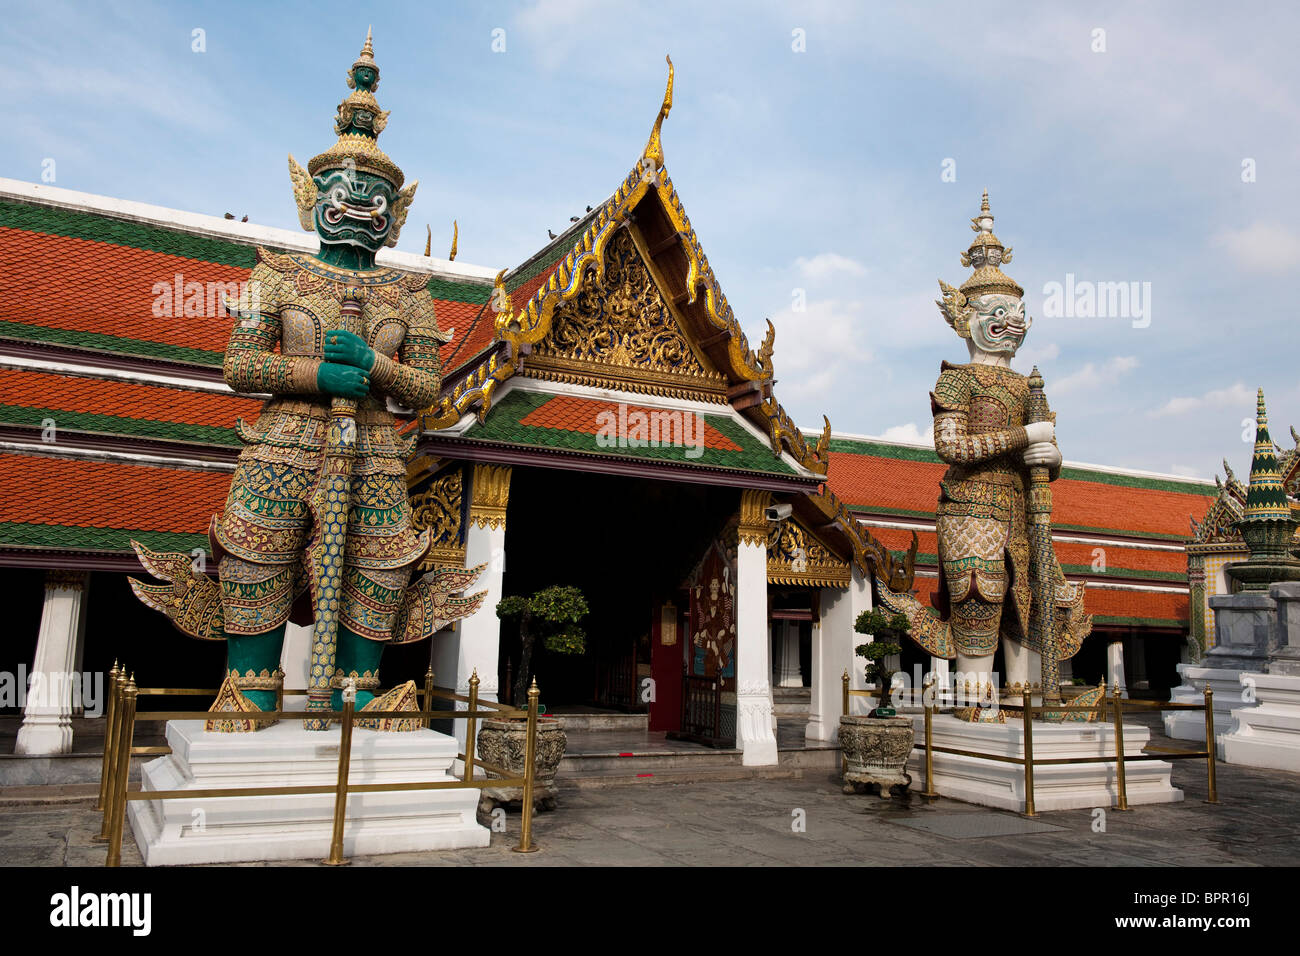 Two yaks (mythological giant), Grand Palace, Bangkok, Thailand Stock Photo